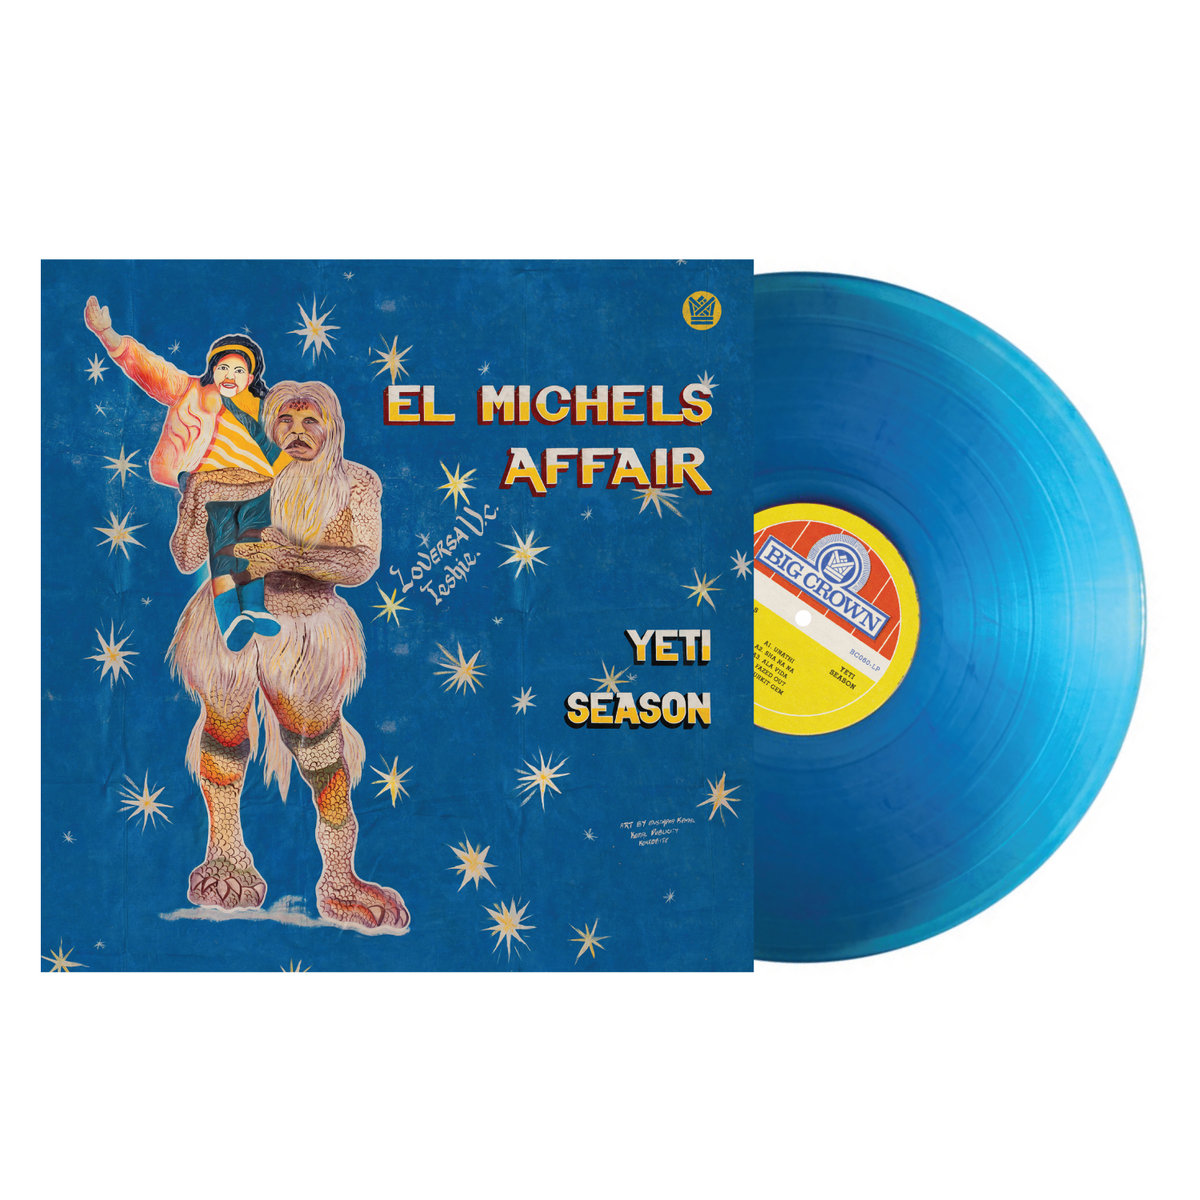 El Michels Affair "Yeti Season" LP